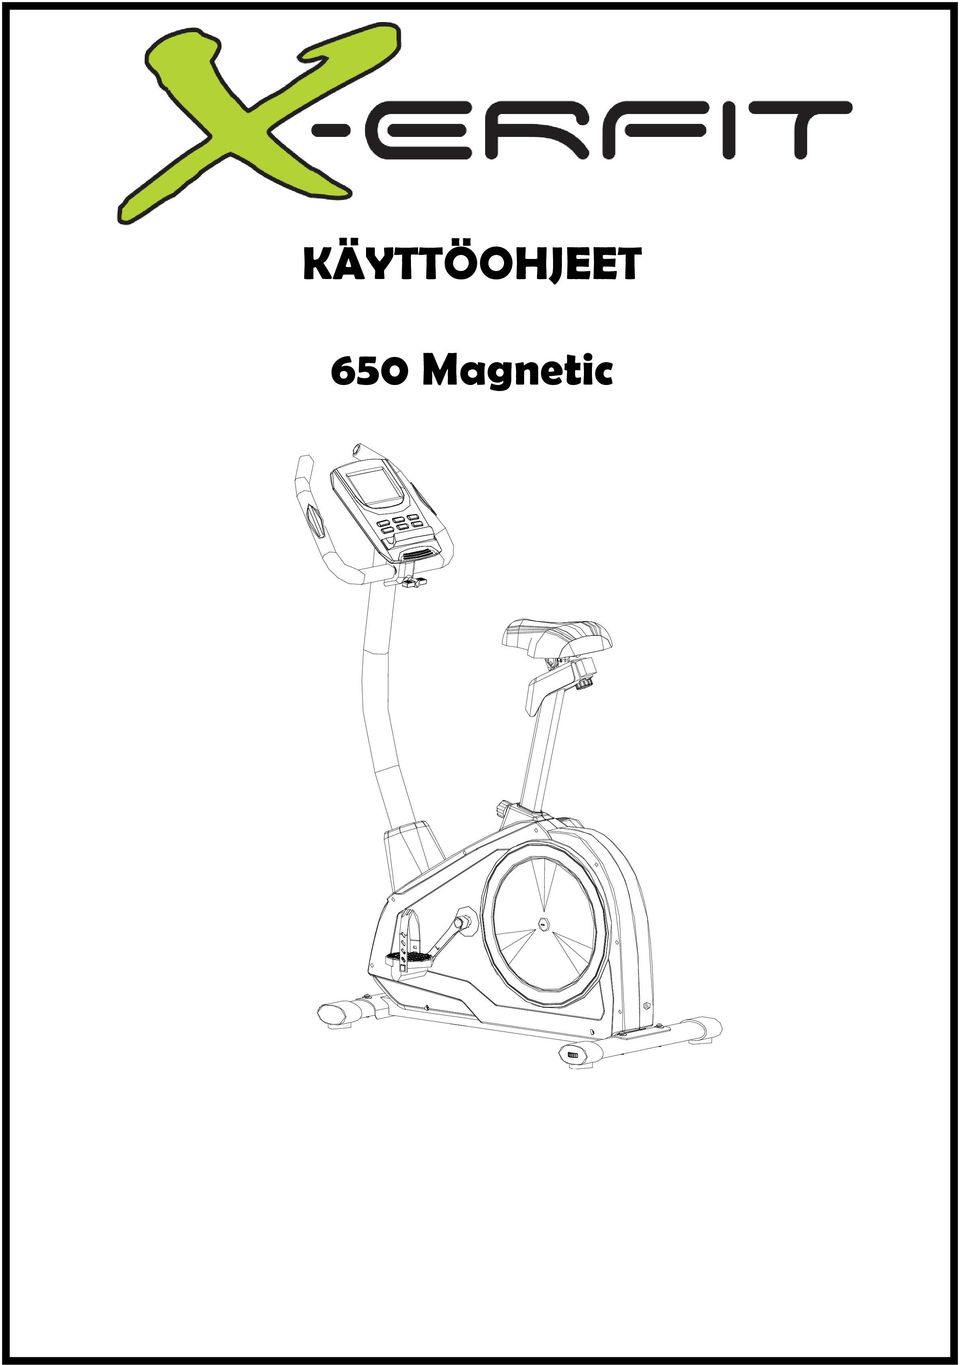 KÄYTTÖOHJEET. 650 Magnetic - PDF Ilmainen lataus